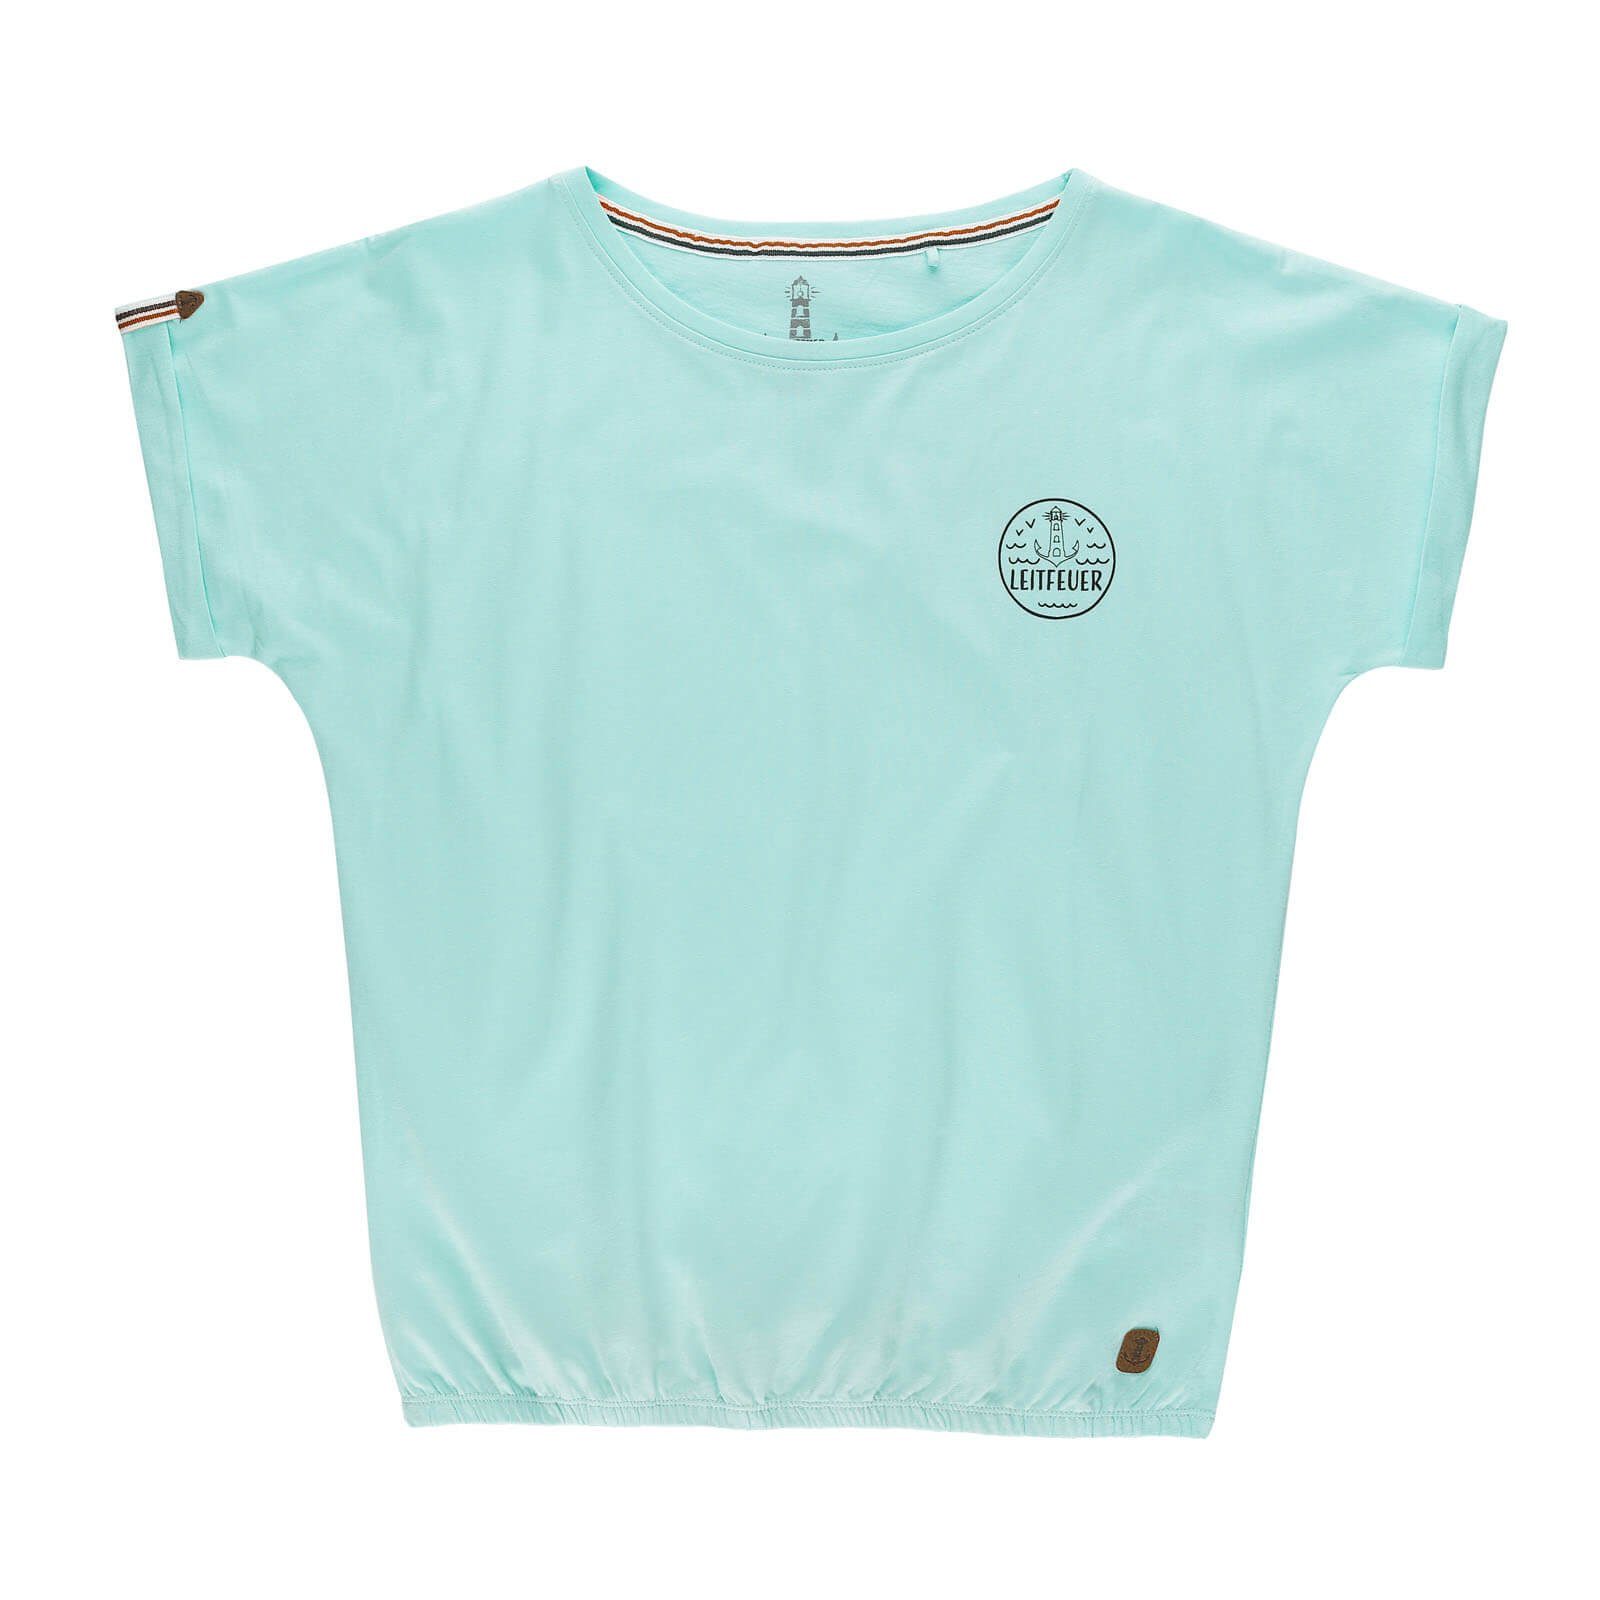 Saum Damen und aqua mit angeschnittenen im Sommershirt Gummizug Ärmeln T-Shirt Leitfeuer